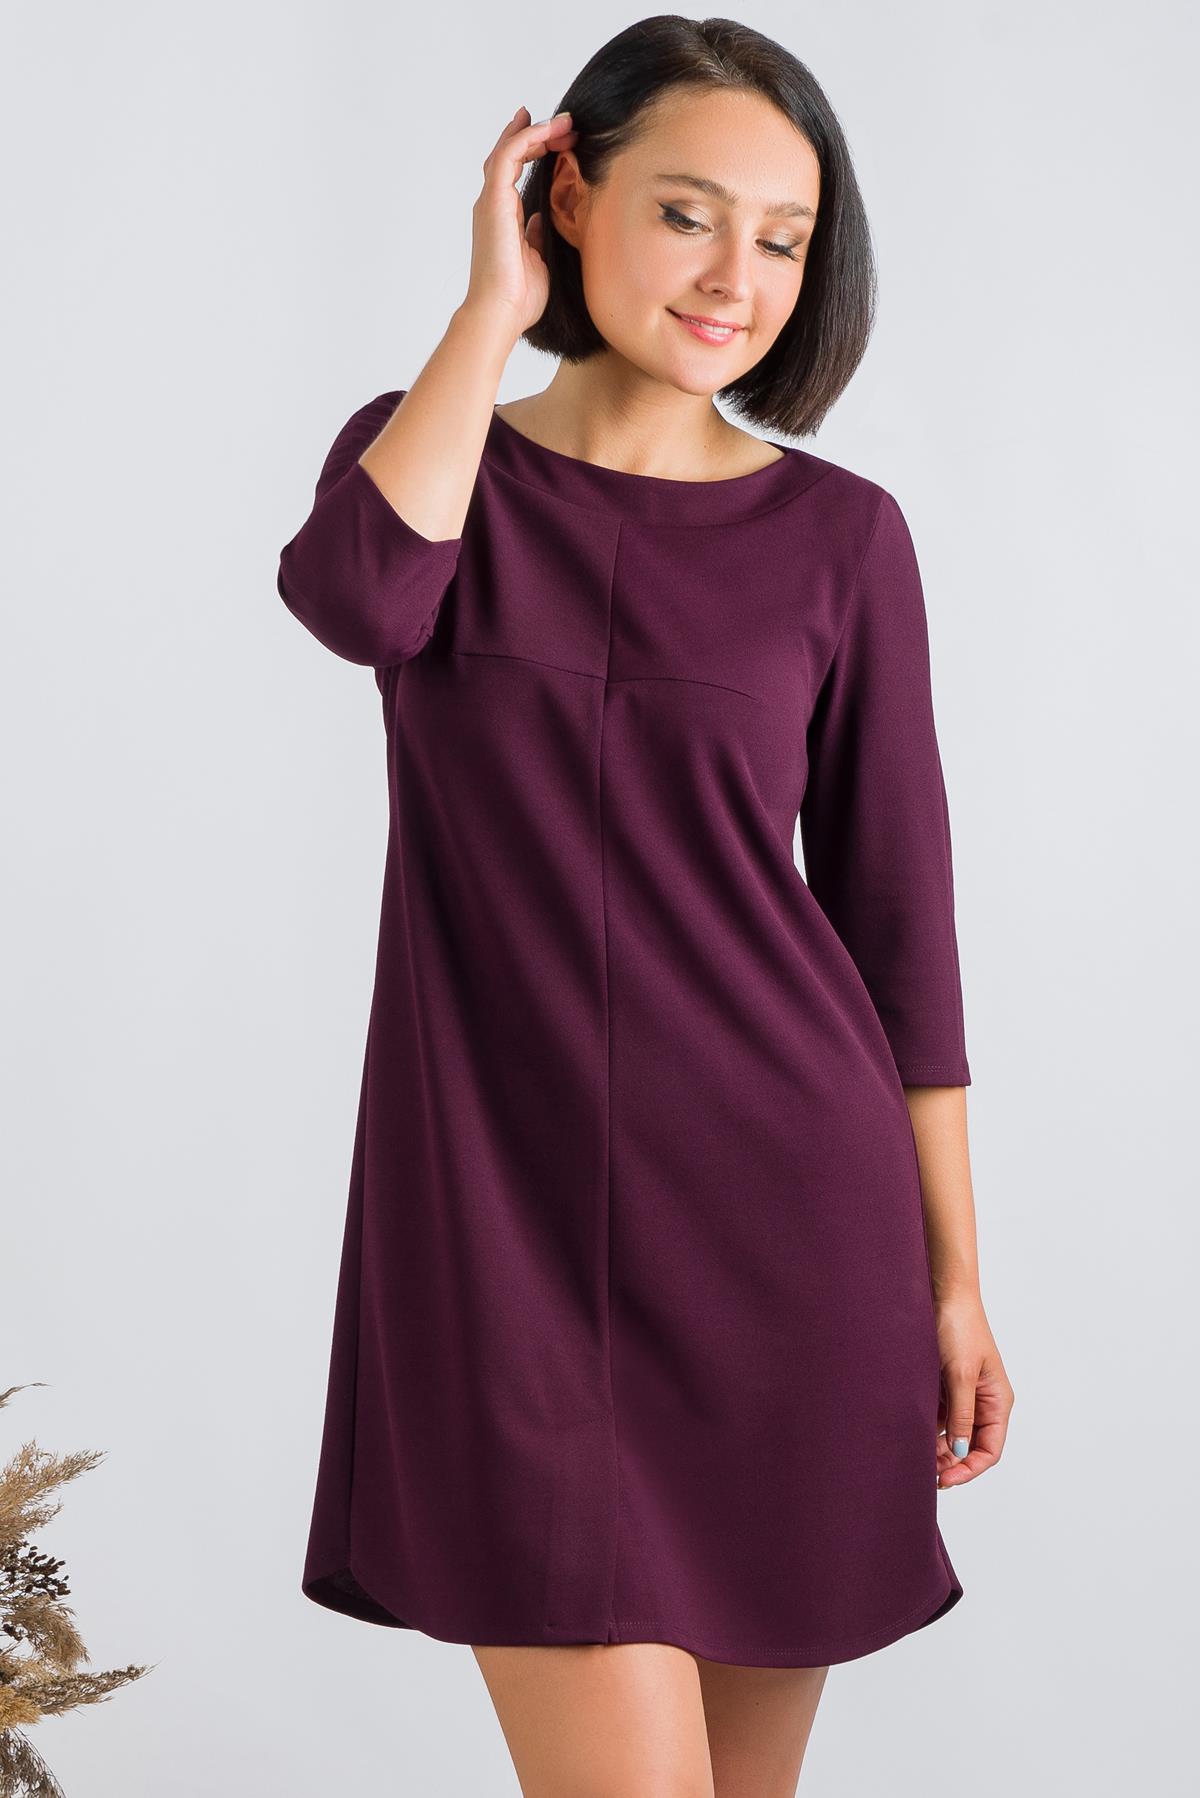 Платье женское Ш'аrliзе 0183 фиолетовое 48 RU